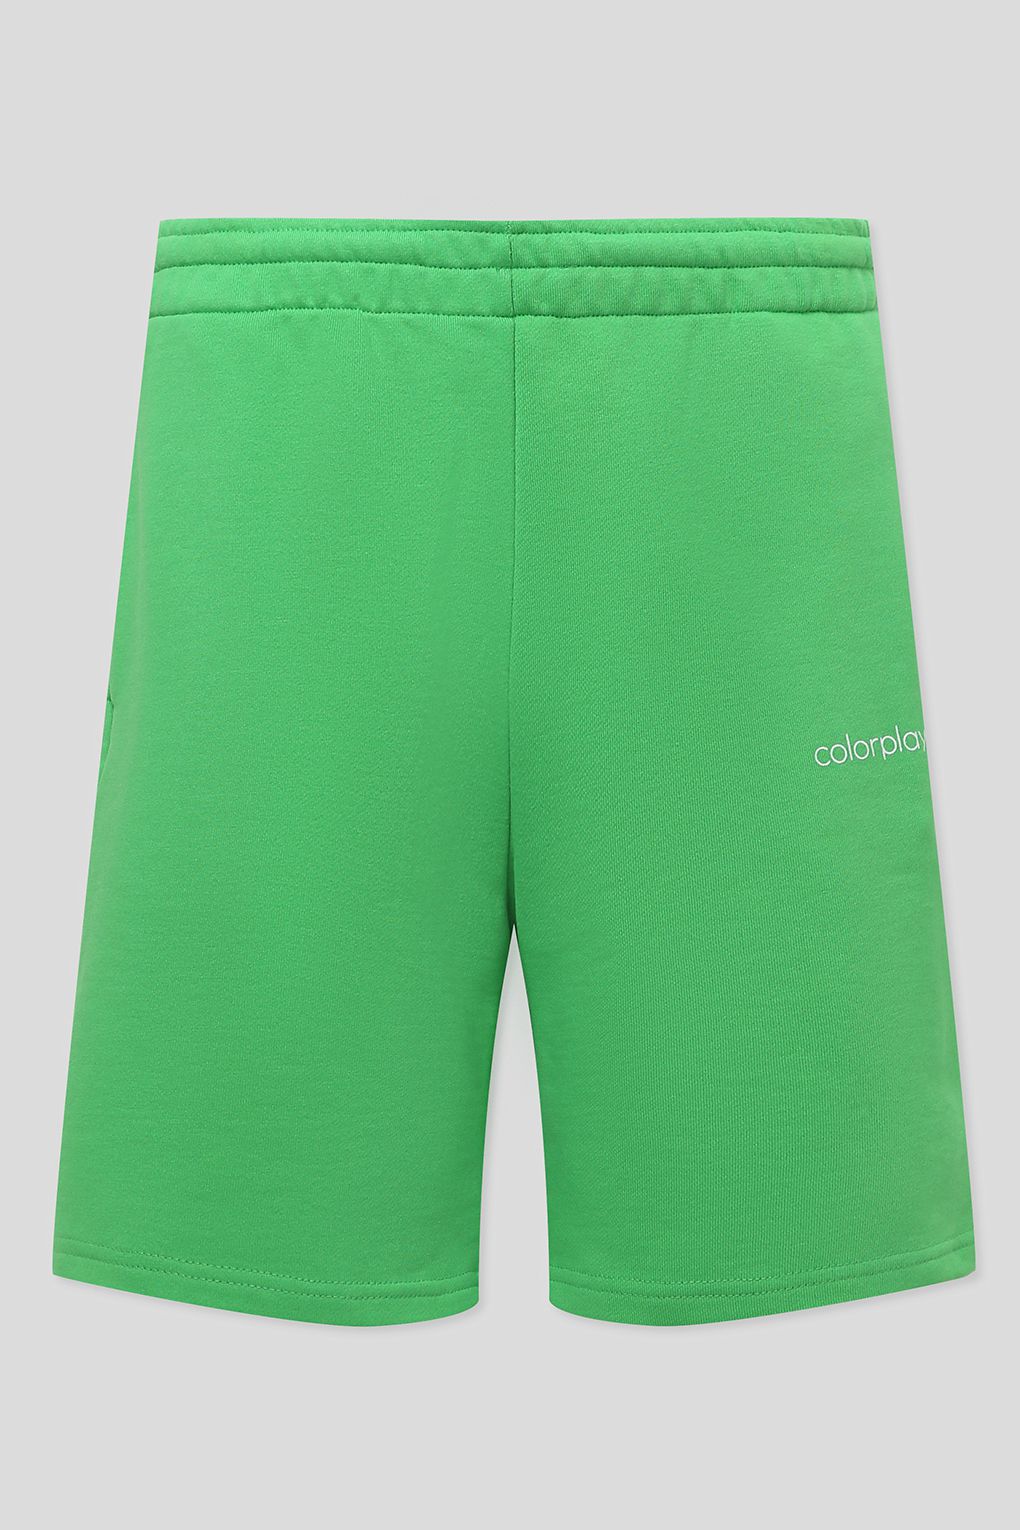 Повседневные шорты мужские COLORPLAY CP22041625-004 зеленые XL